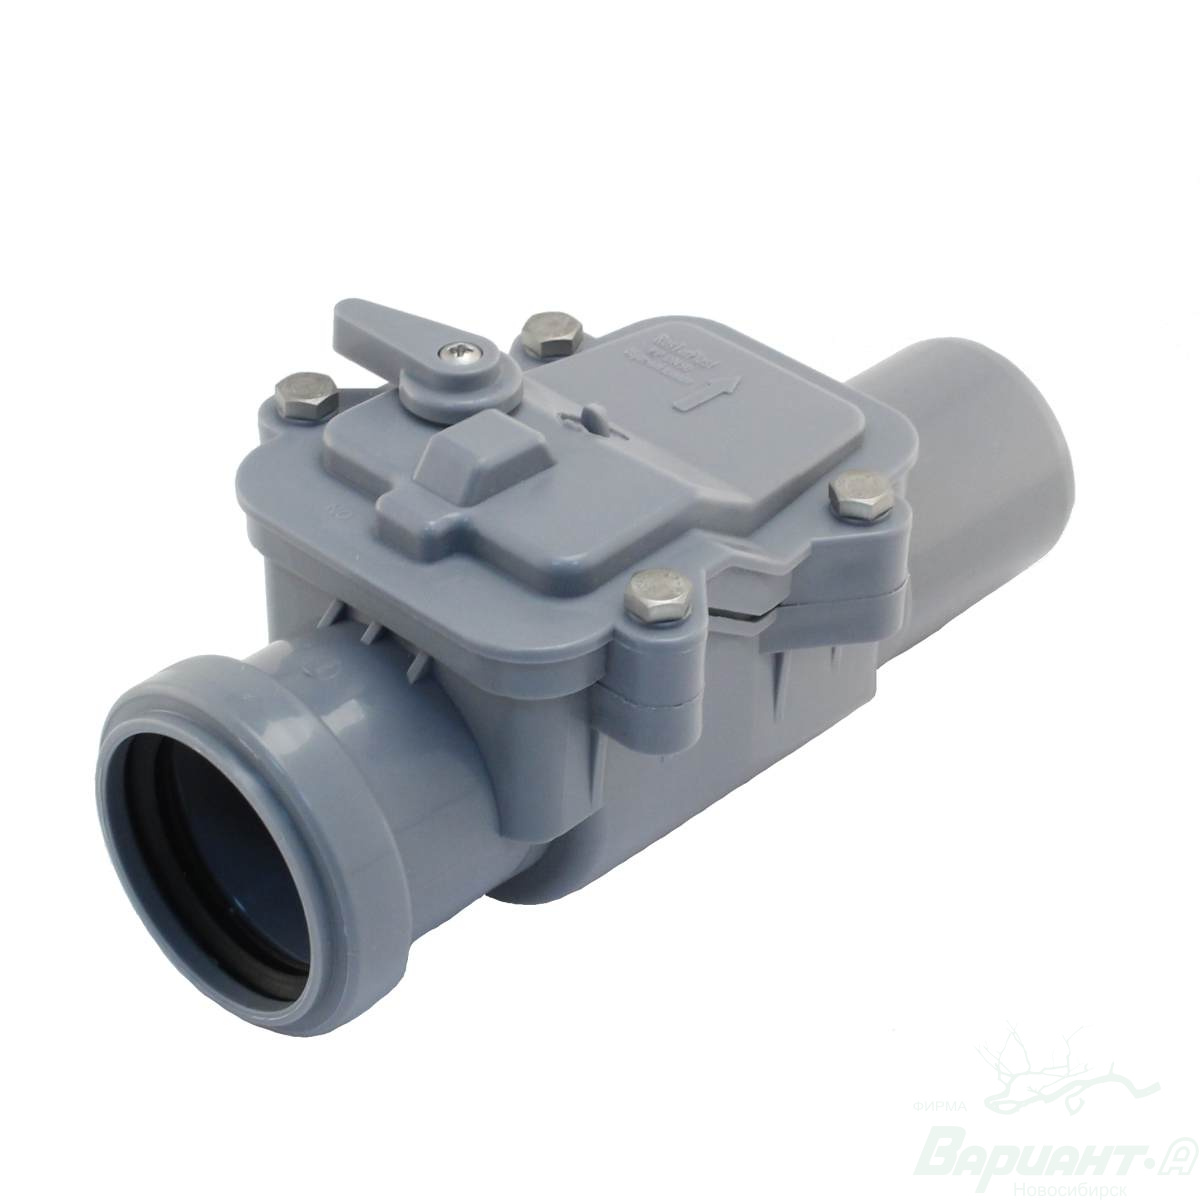  клапан для канализации 50 мм РосТурПласт - Обратные и .